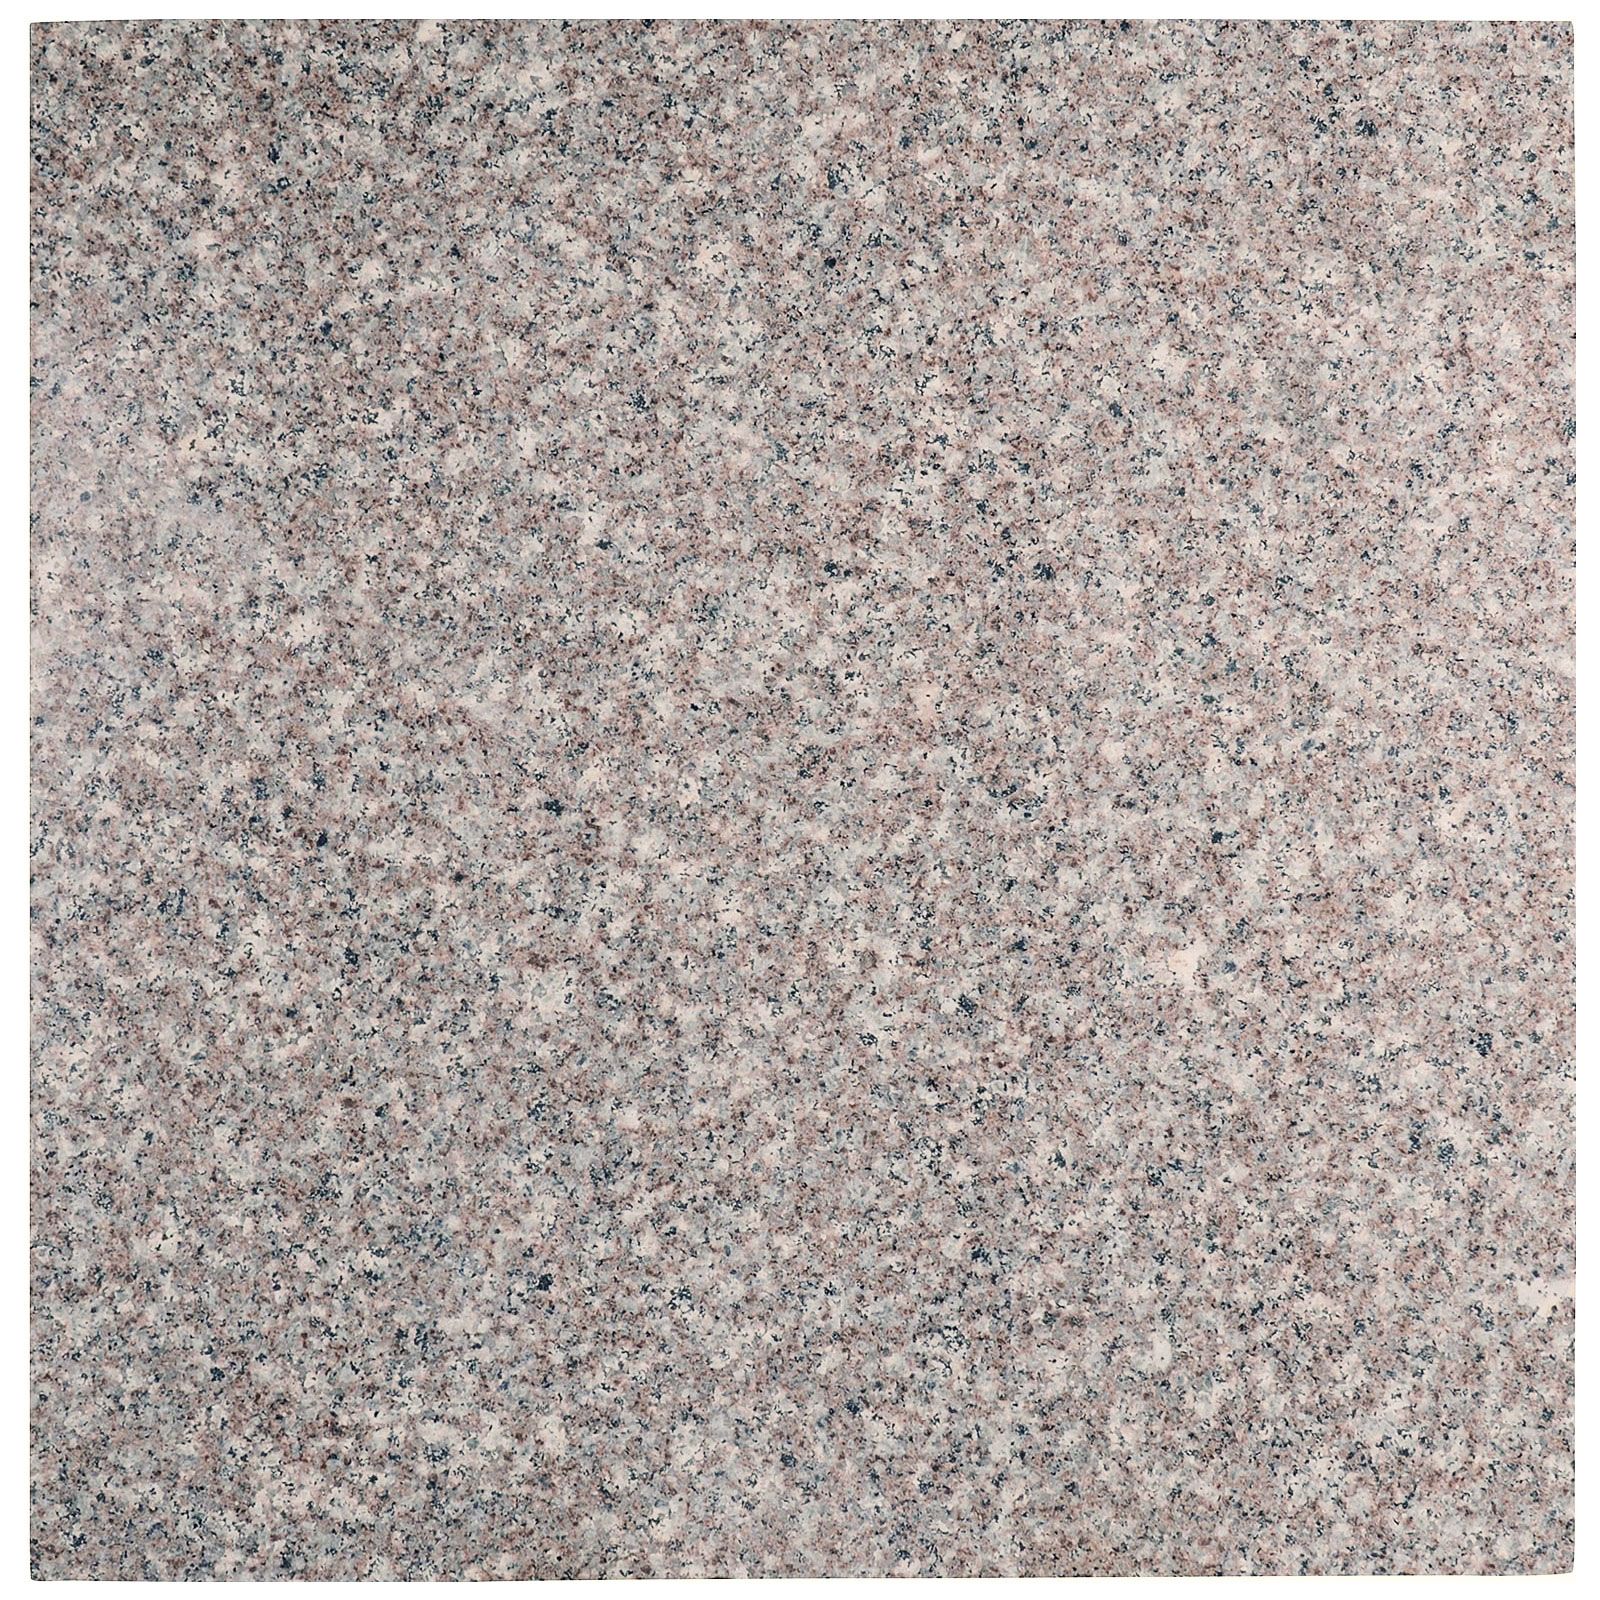 Płytki Granit G664 Królewski Brąz płomieniowany 60x60x2 cm (3,96 m2)